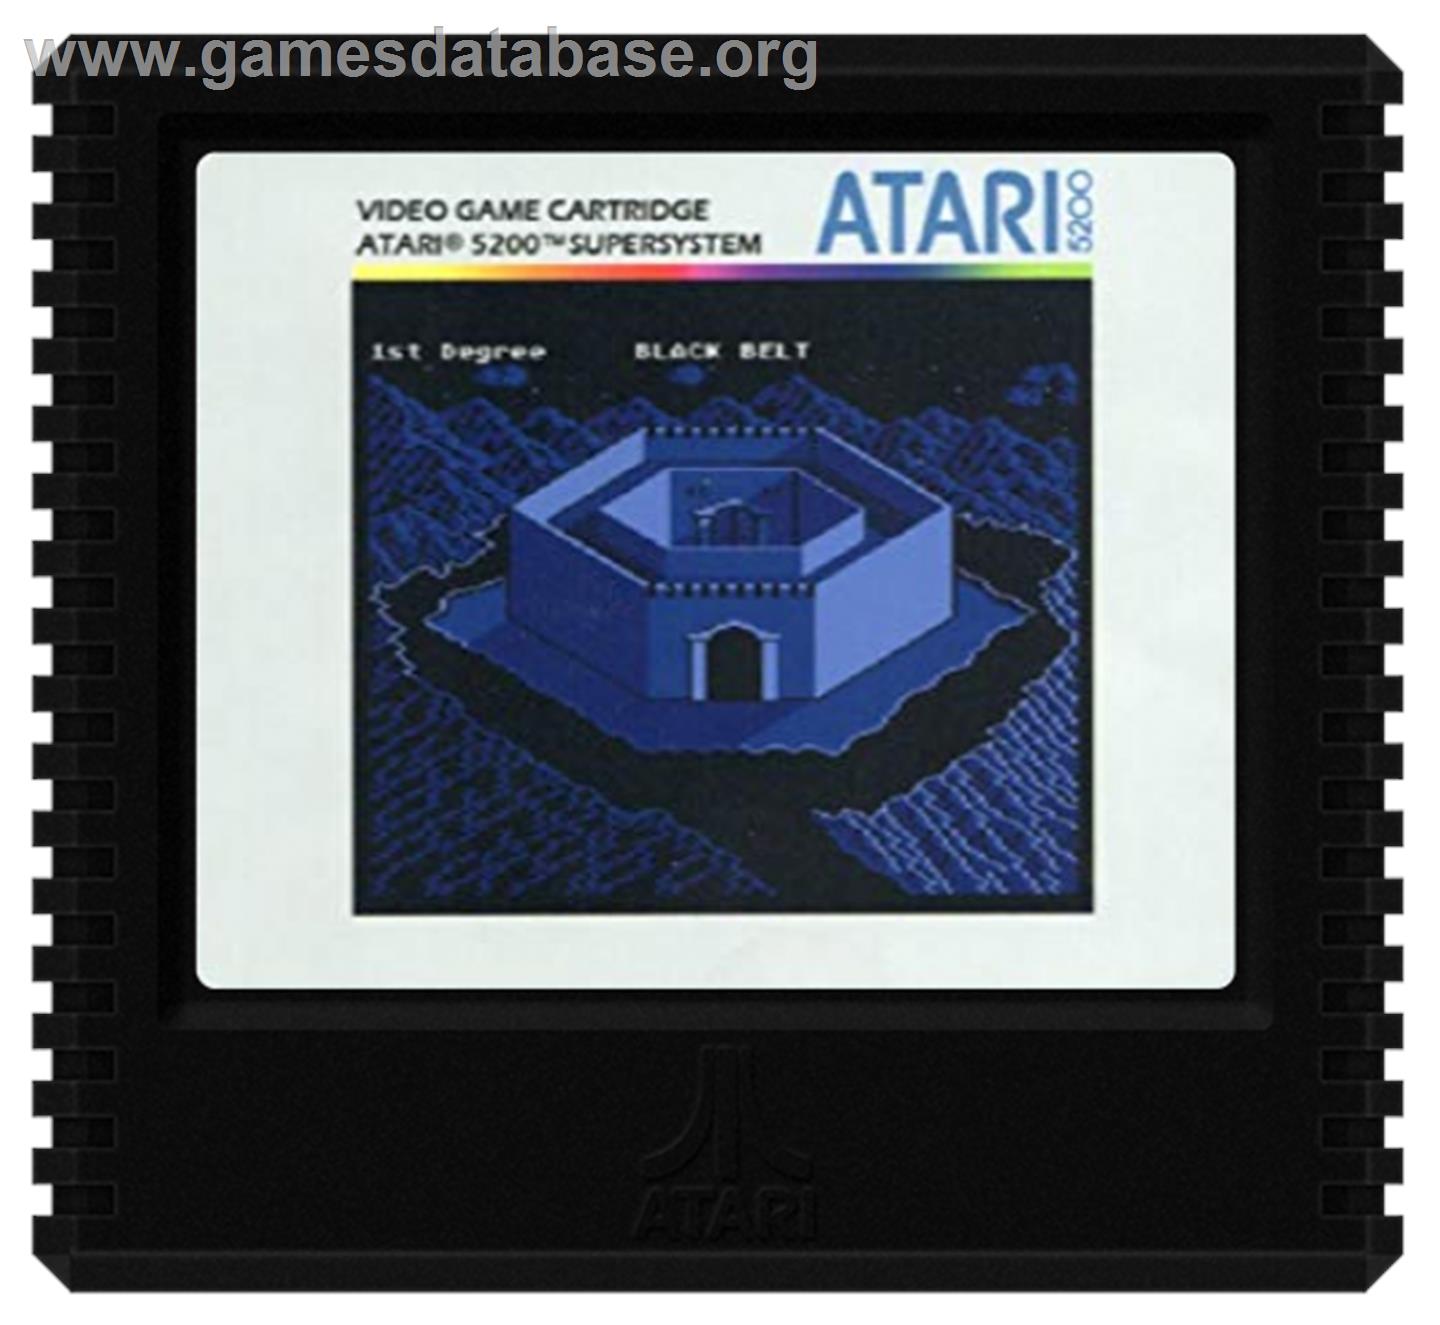 Black Belt - Atari 5200 - Artwork - Cartridge